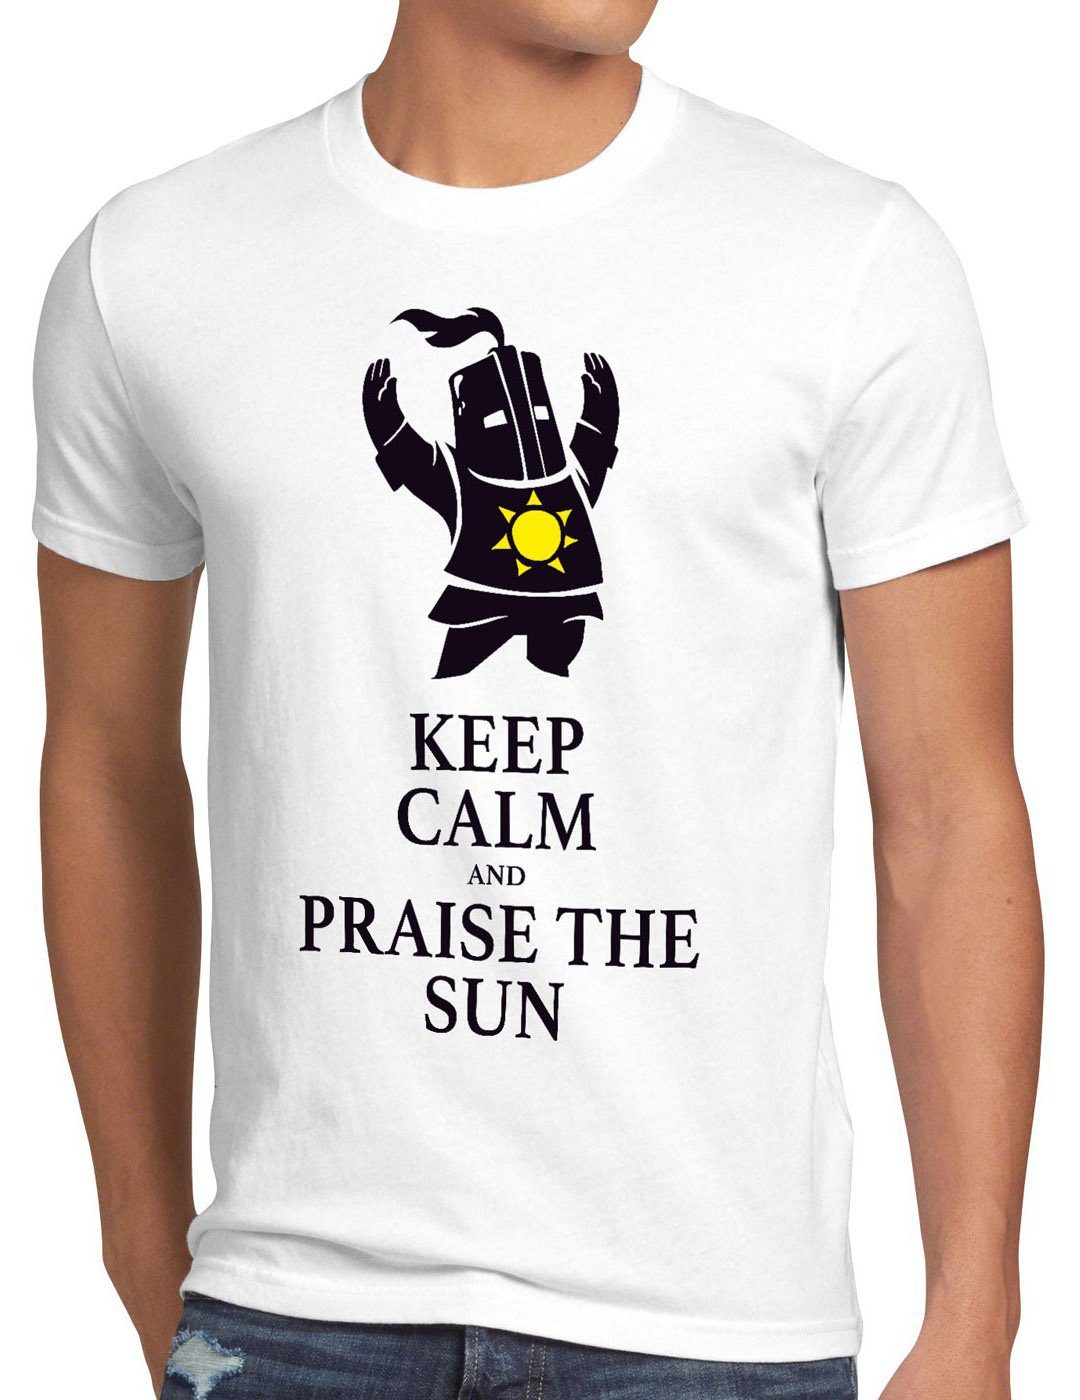 style3 Print-Shirt Herren T-Shirt Keep Calm Praise the Sun Dark Sunbro Solaire Souls Sonnen Ritter weiß